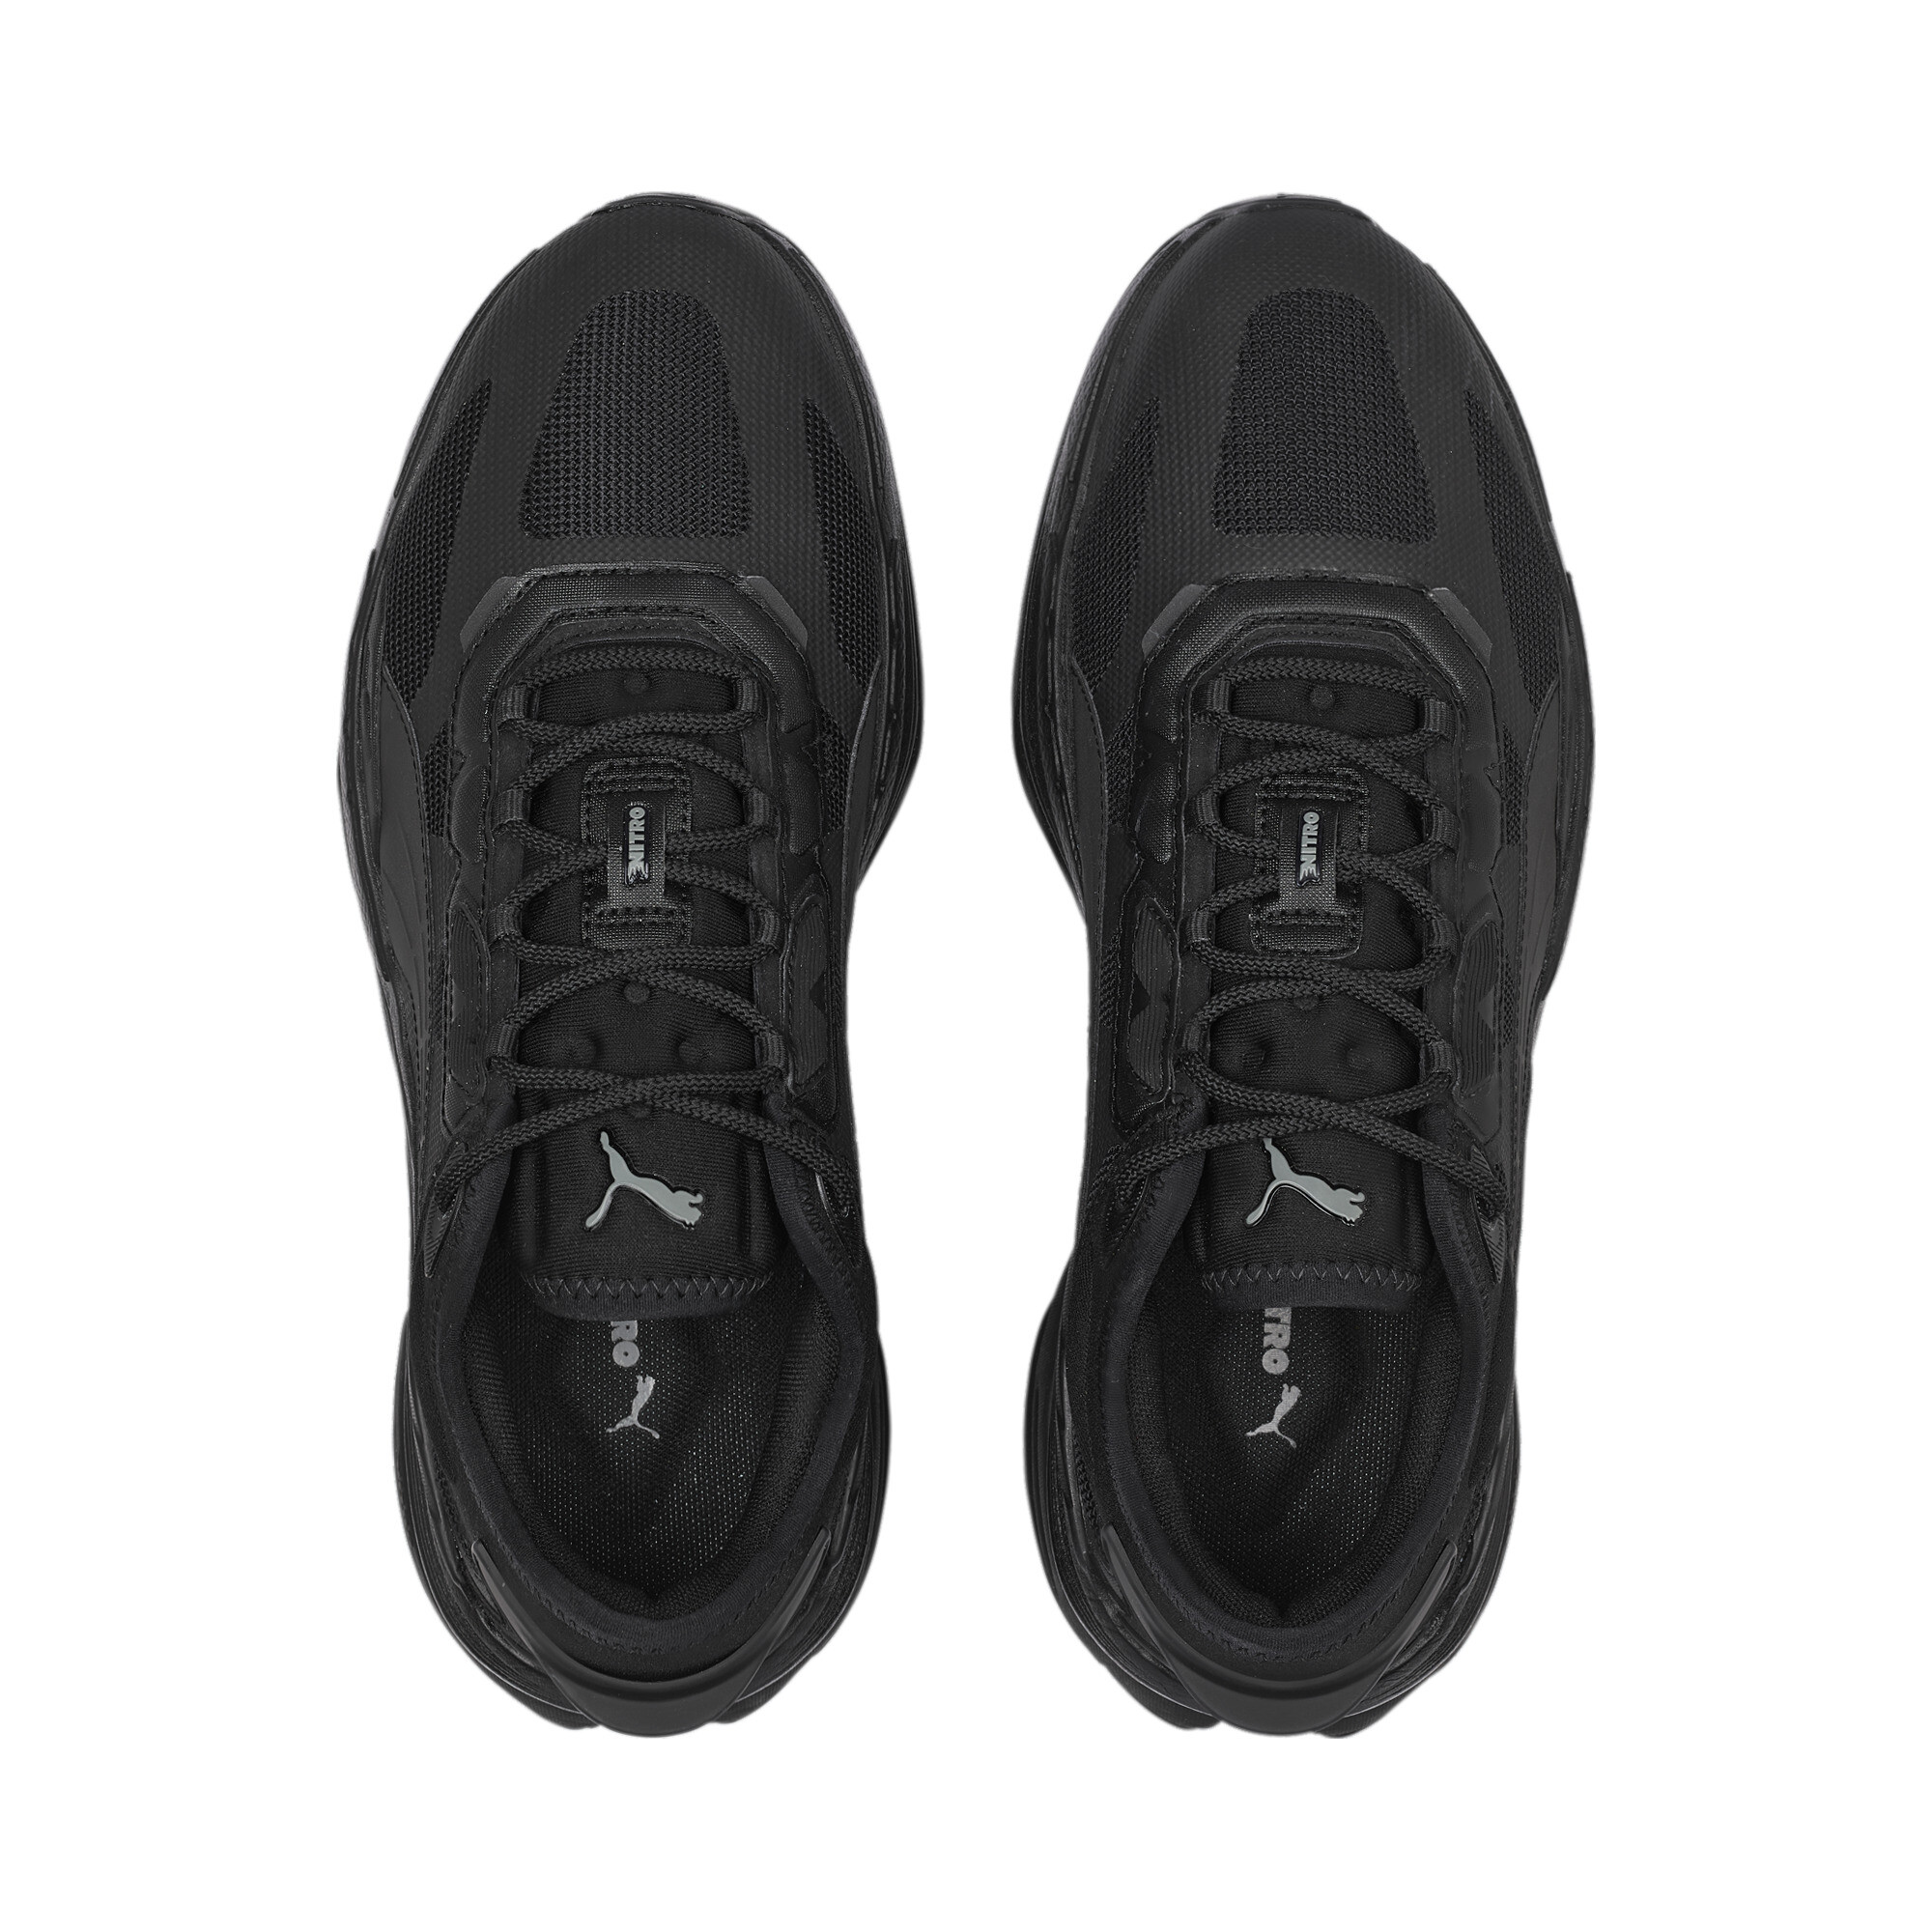 Men's PUMA Extent Nitro Mono Sneakers In Black, Size EU 41